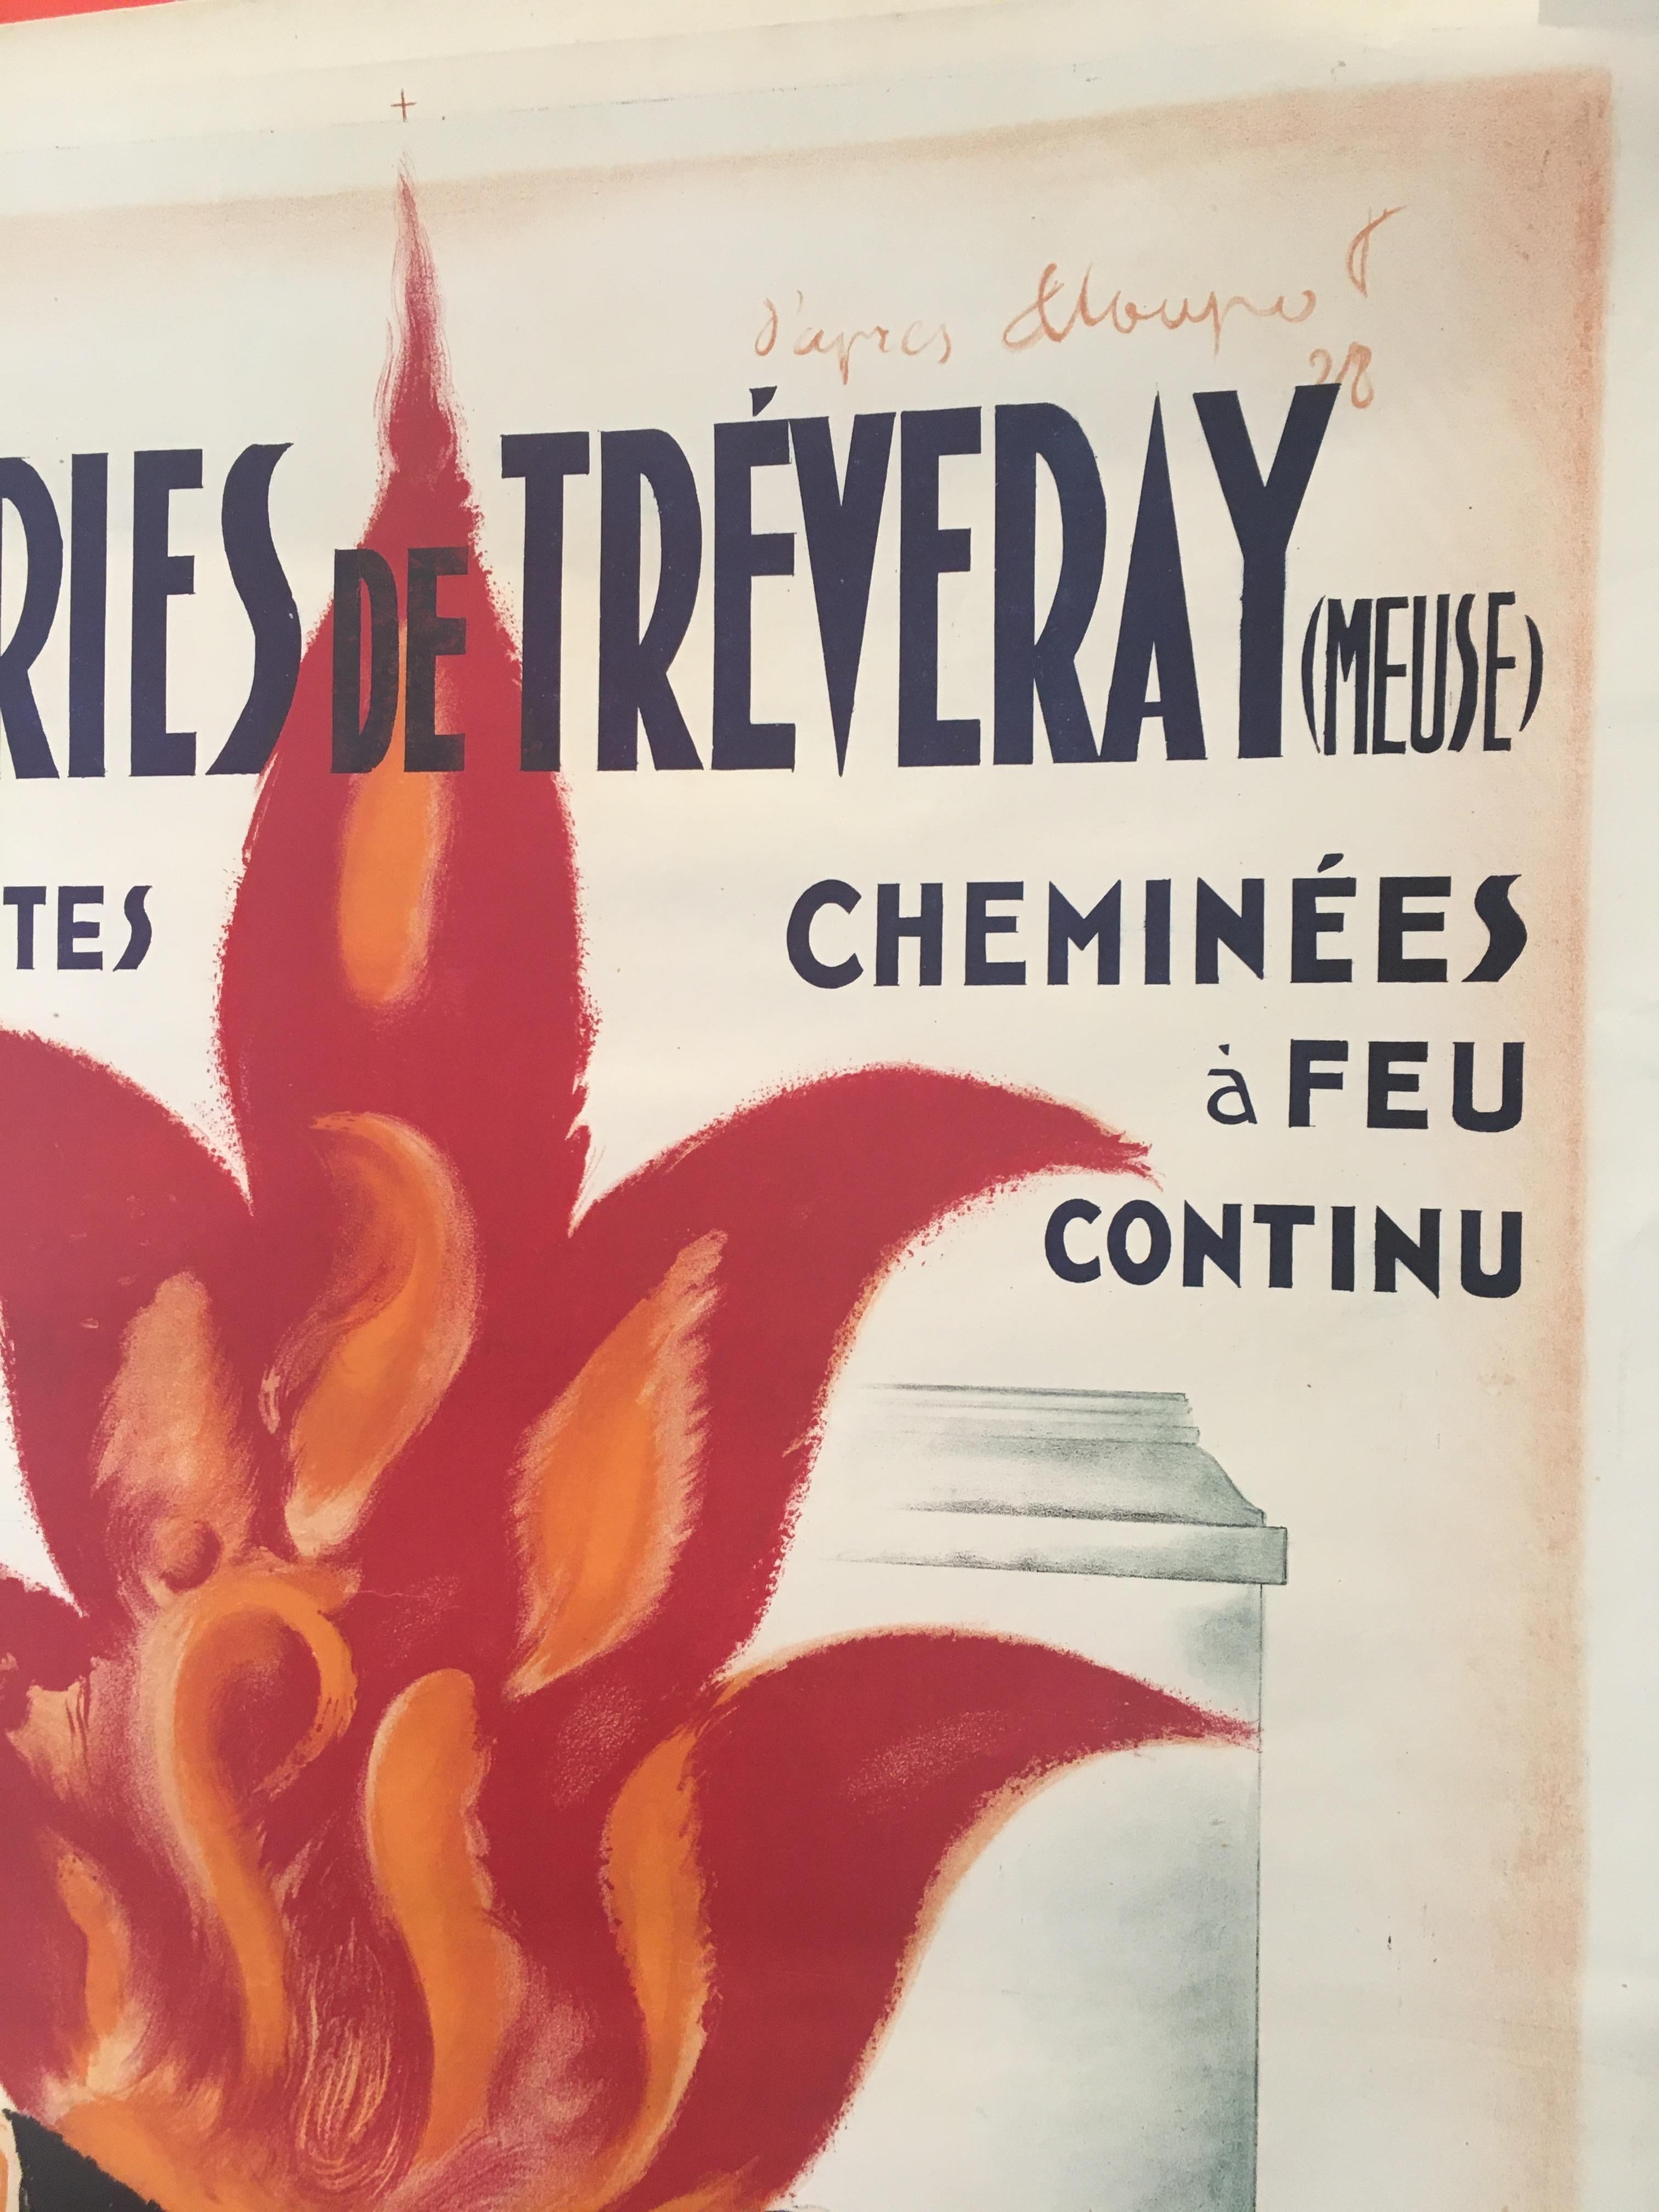 MIRUS' de Charles Loupot affiche originale vintage, circa 1935

Cette affiche Art déco a été réalisée pour faire la publicité du Mirus Poele a Bois, un poêle à bois.

Charles Loupot est né en Suisse et s'est installé à Paris où il est devenu